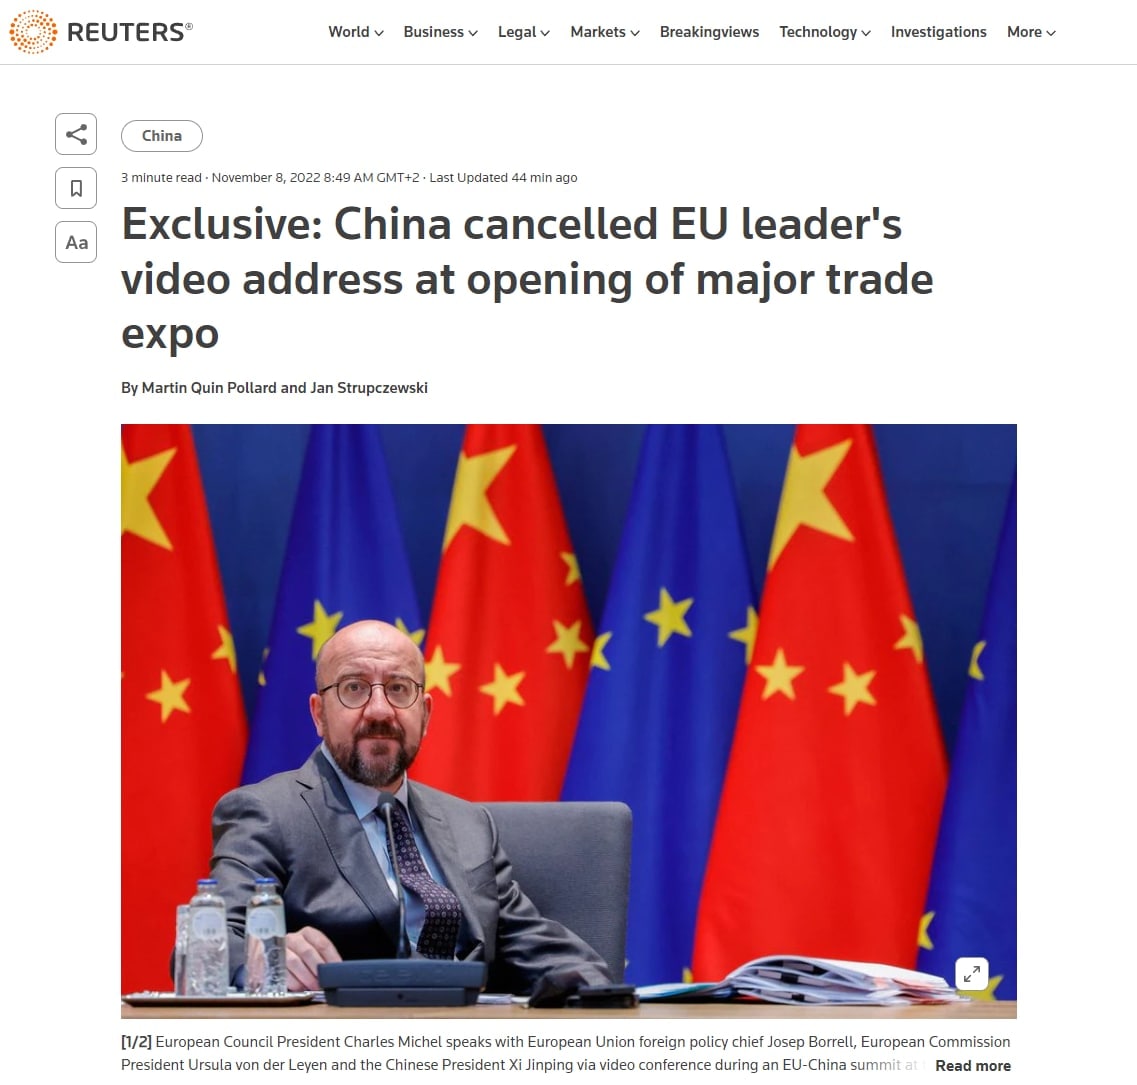 Власти Китая отменили трансляцию видеообращения главы Евросовета Шарля Мишеля на открытии China International Import Expo, - пишет Reuters